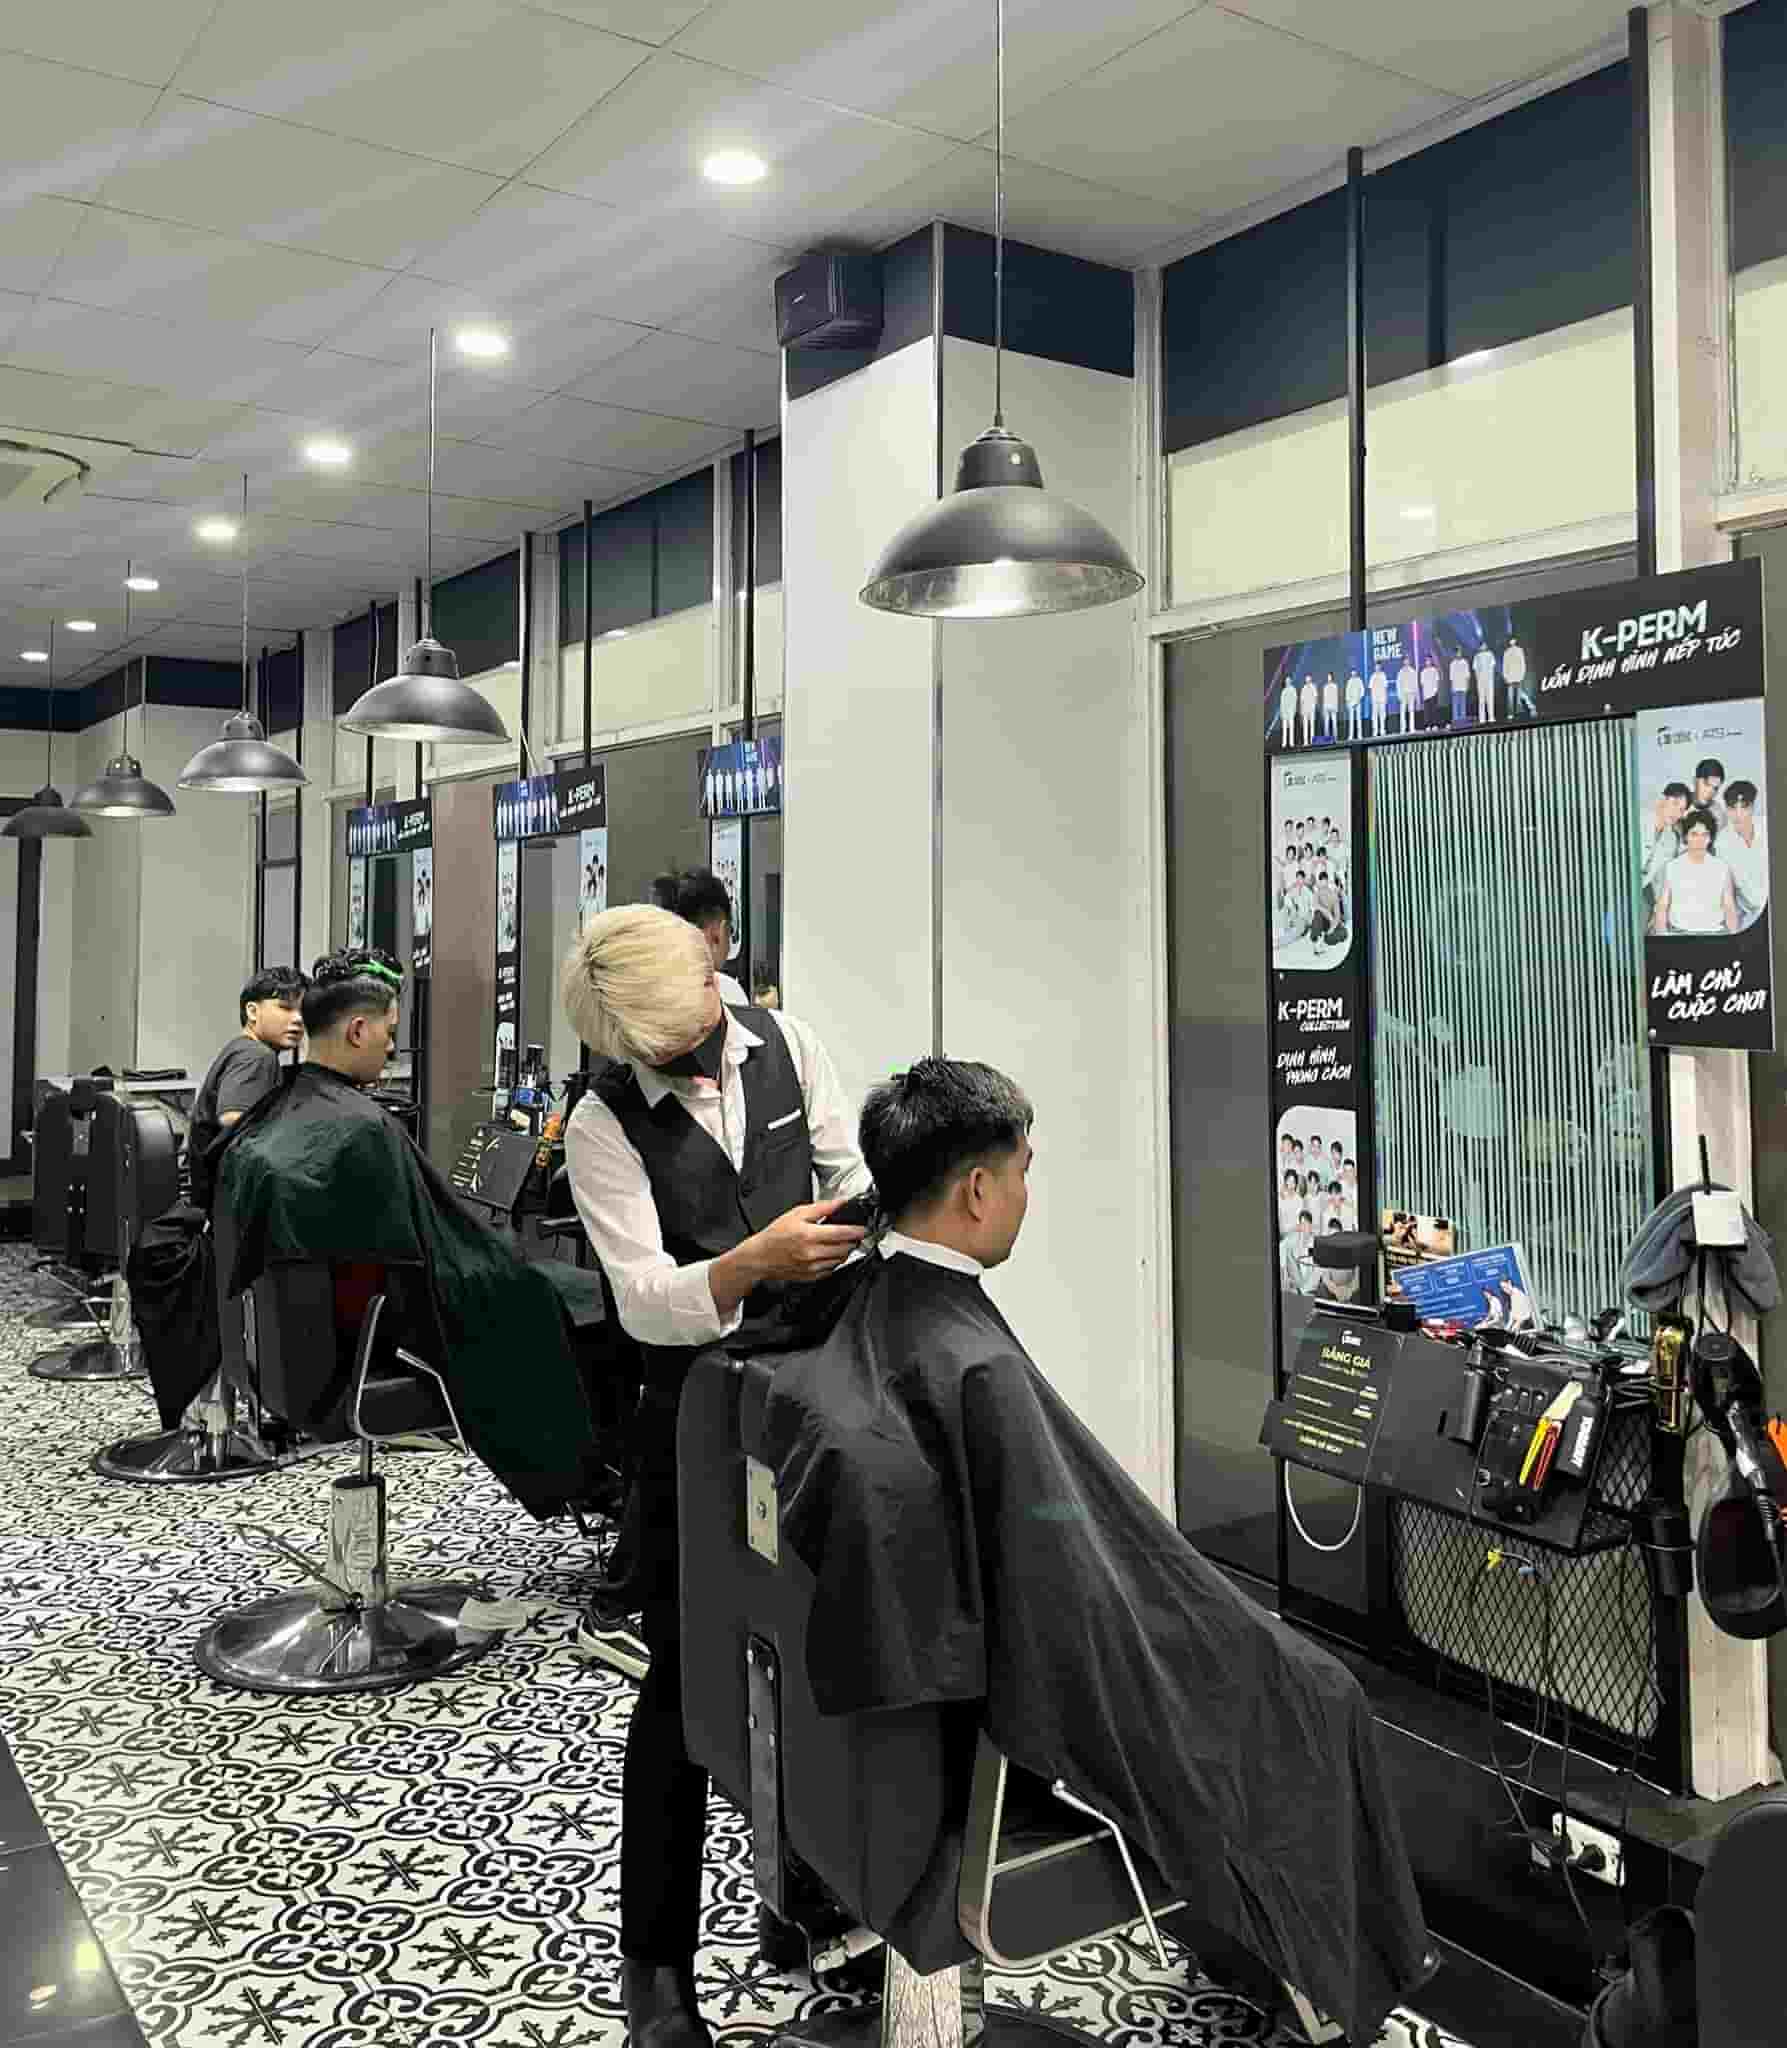 30Shine Academy | Học cắt tóc nam chuyên nghiệp - Cam kết 100% có việc làm  sau khóa học 6 tháng